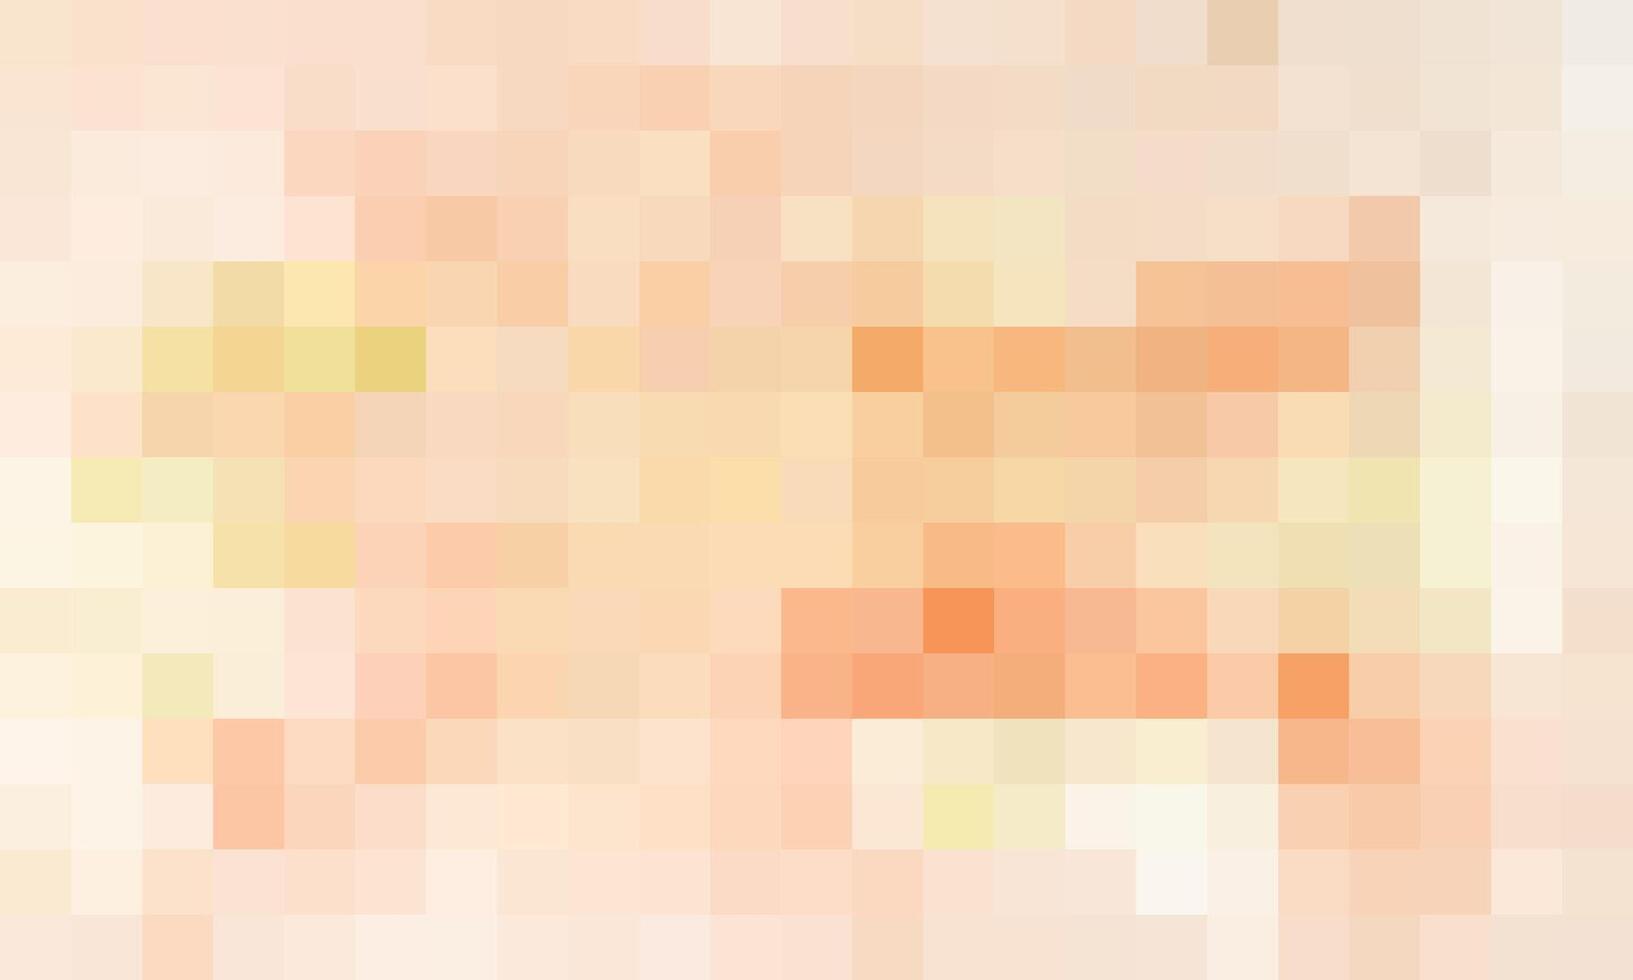 abstrakt och färgrik pixel bakgrund vektor